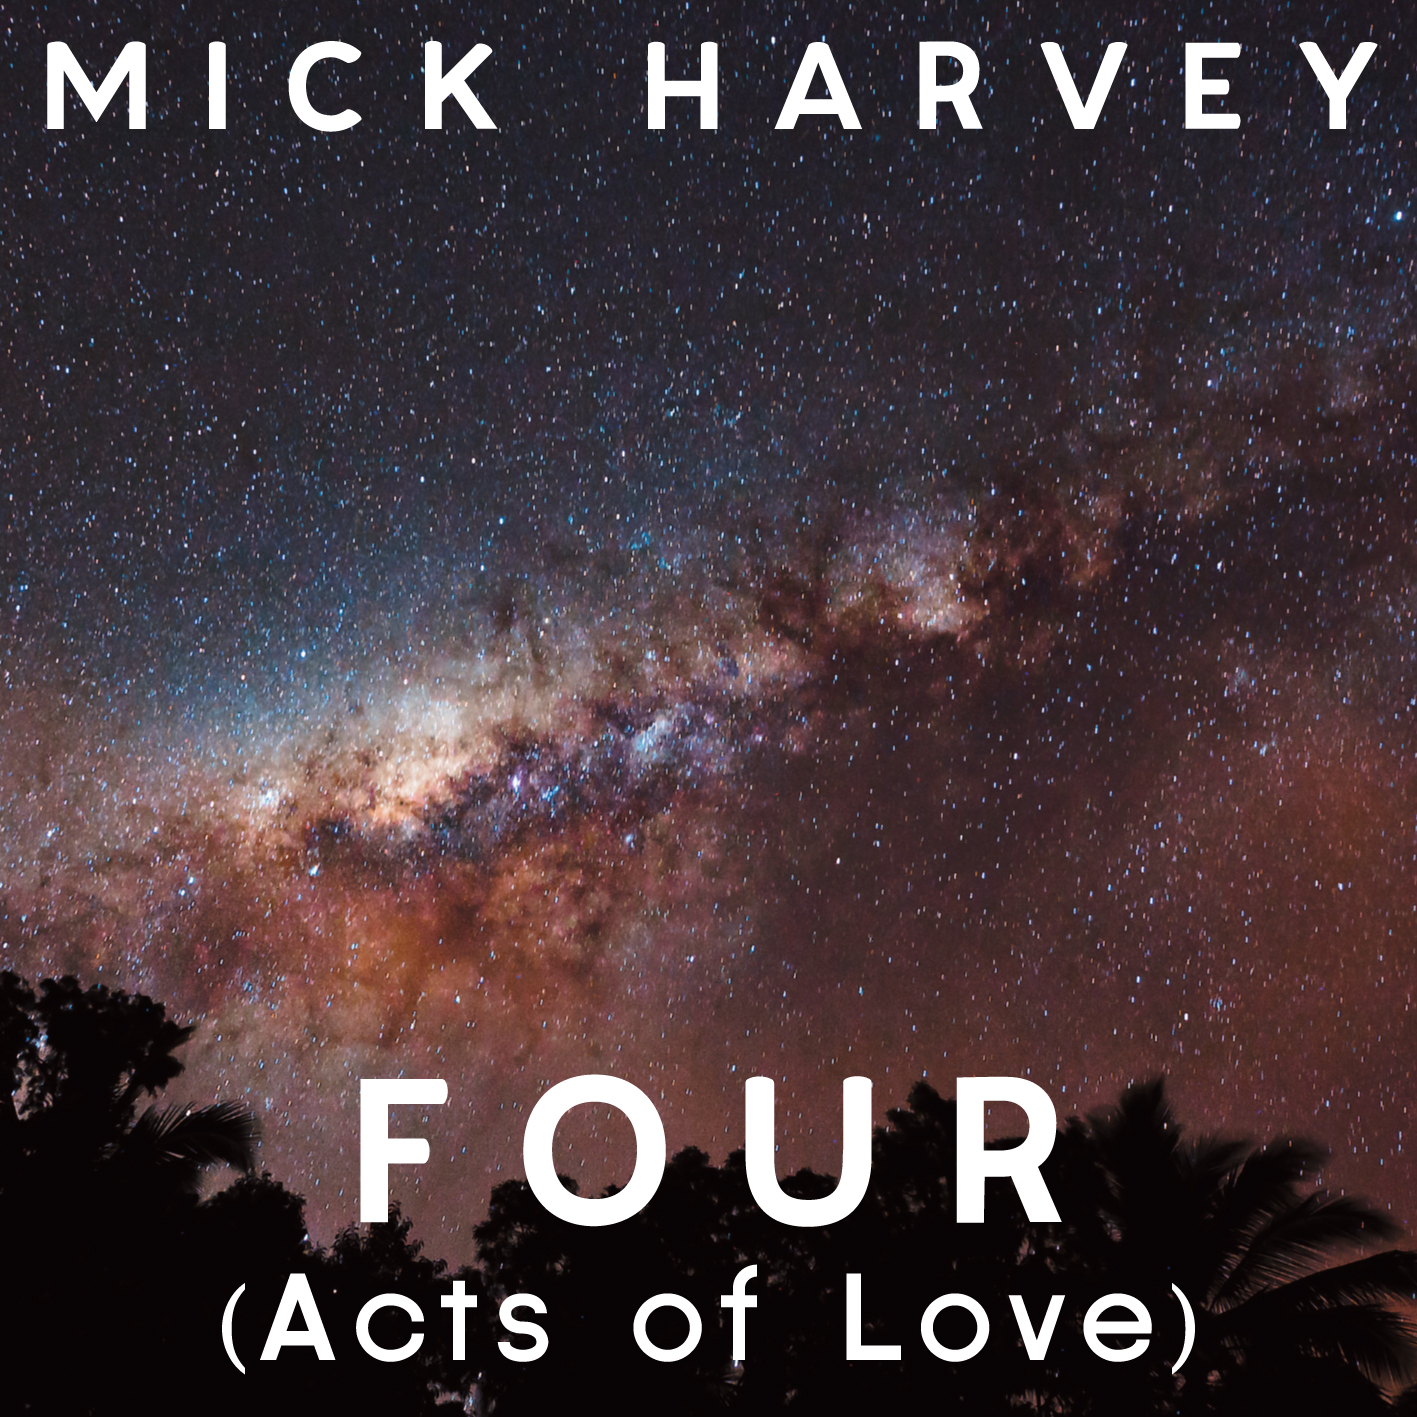 MICK HARVEY  NOUVEL ALBUM FOUR (Acts of Love) – Sortie le 29 avril 2013